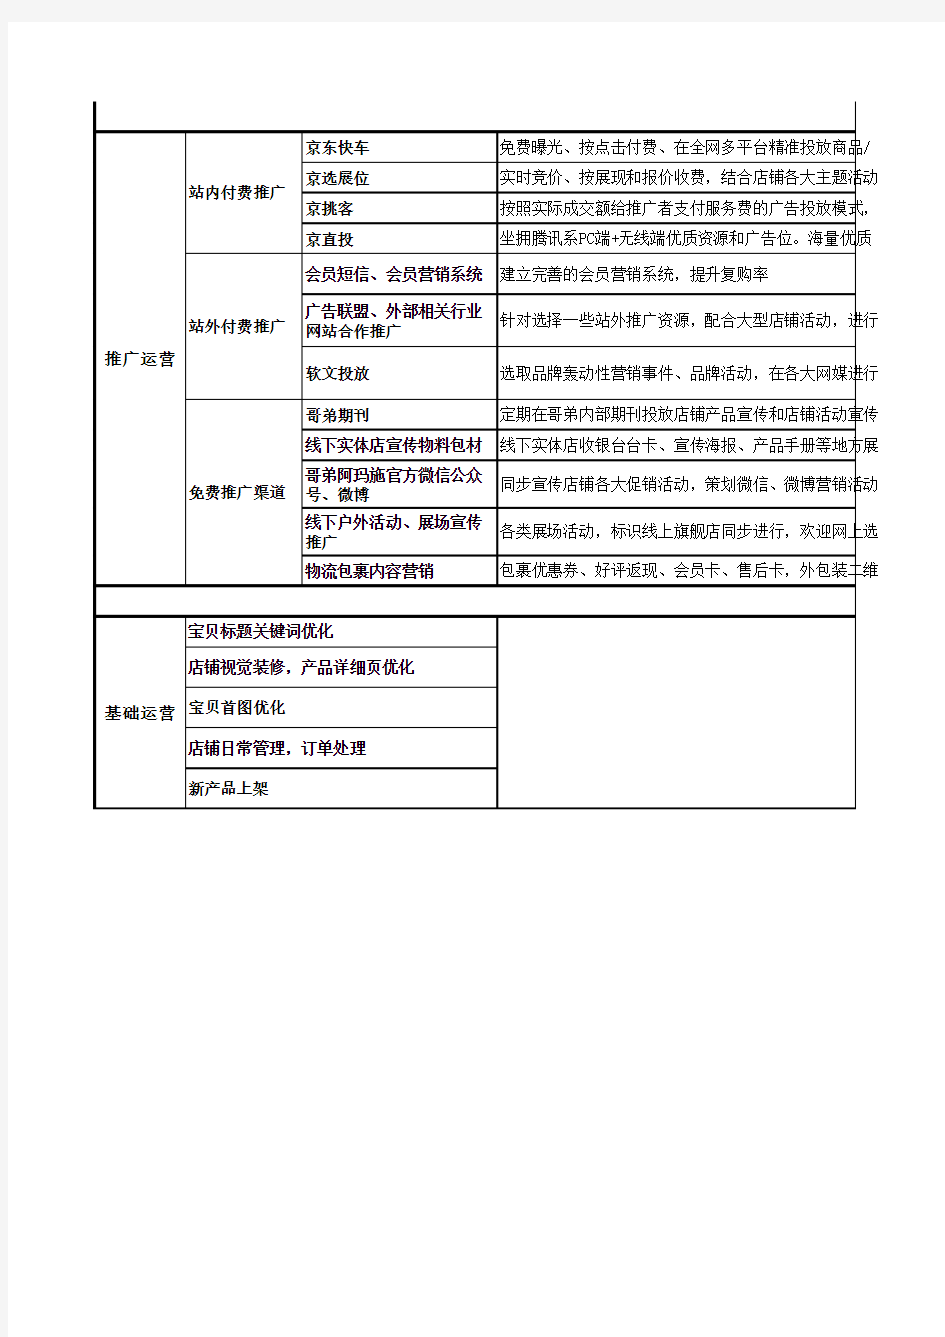 2019年天猫京东店铺年度运营计划详细及月度计划